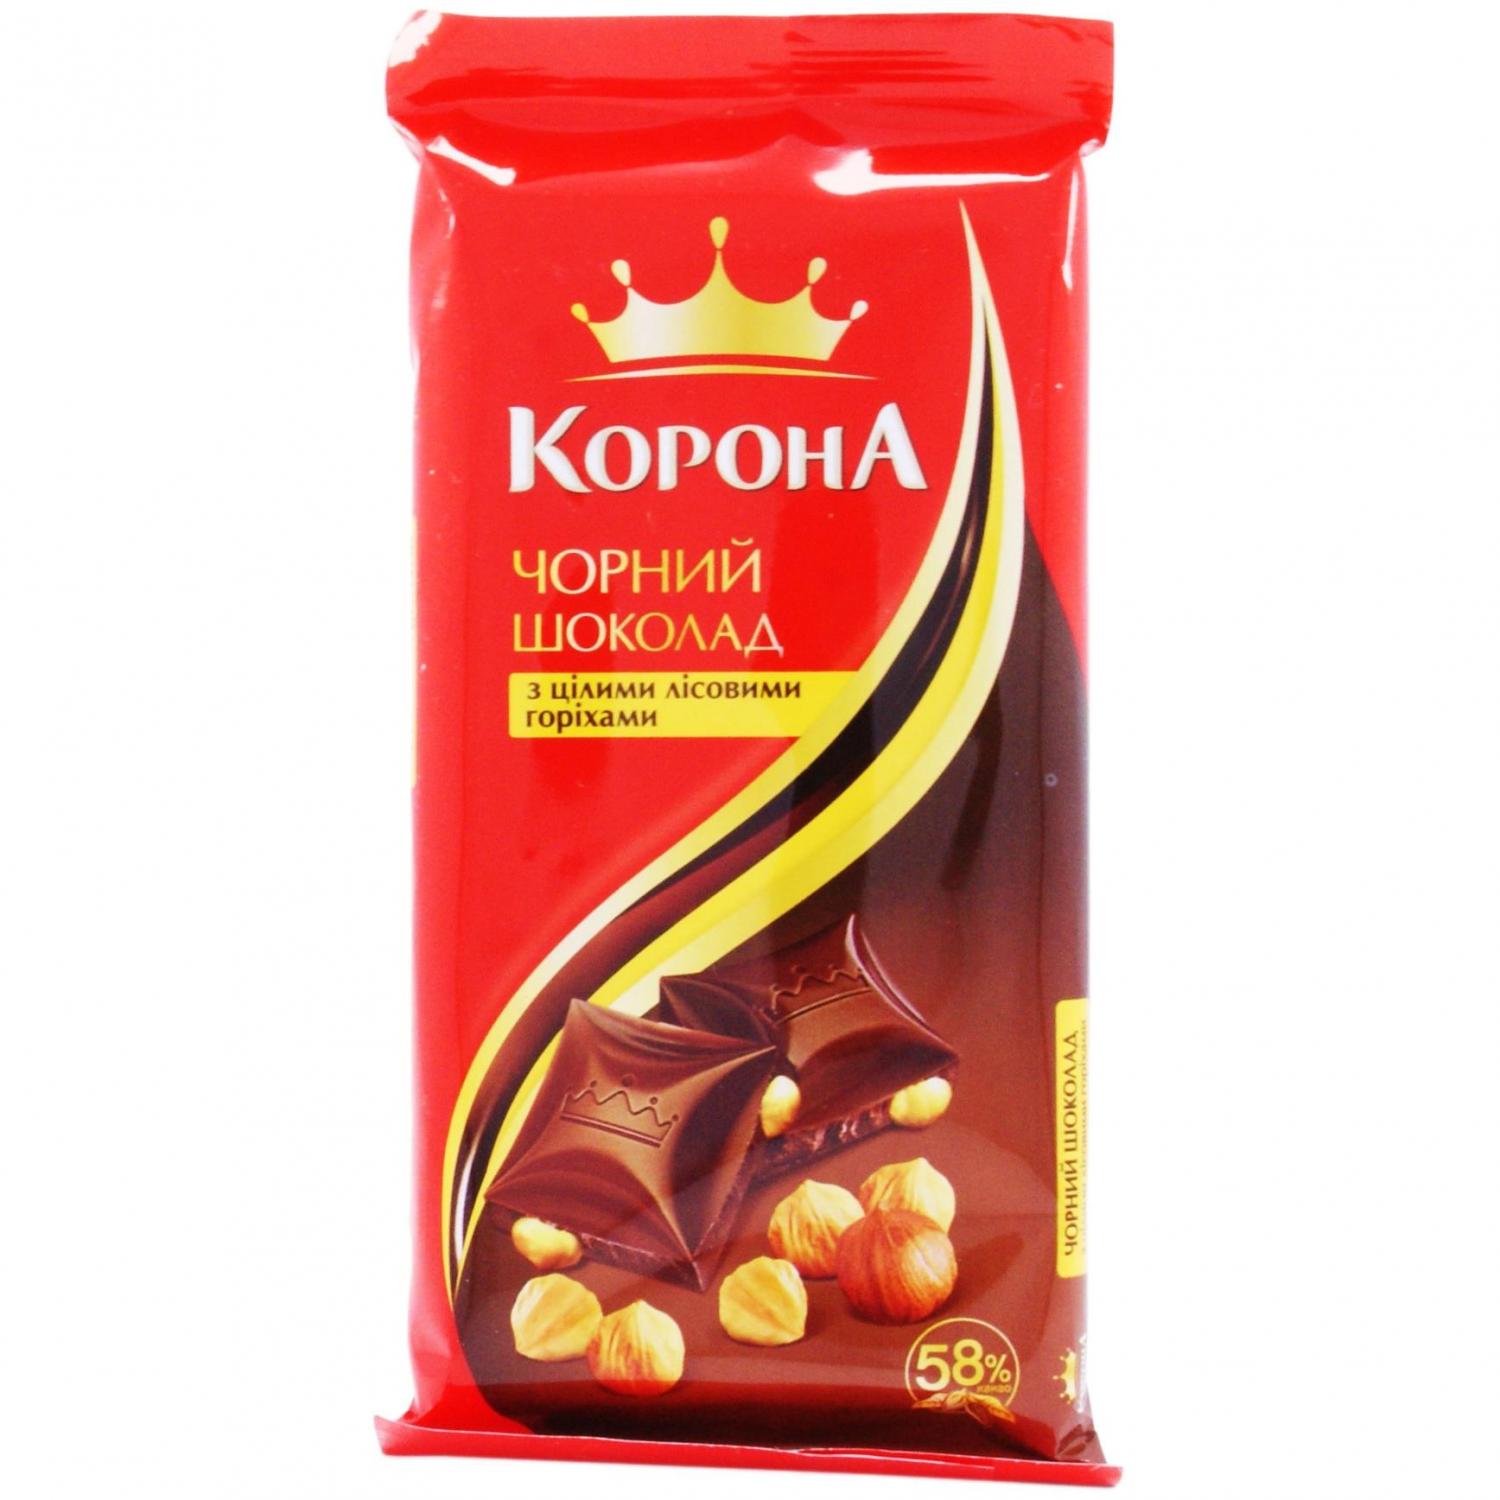 Шоколад Корона чорний з цілими лісовими горіхами, 90 г (596268) - фото 1